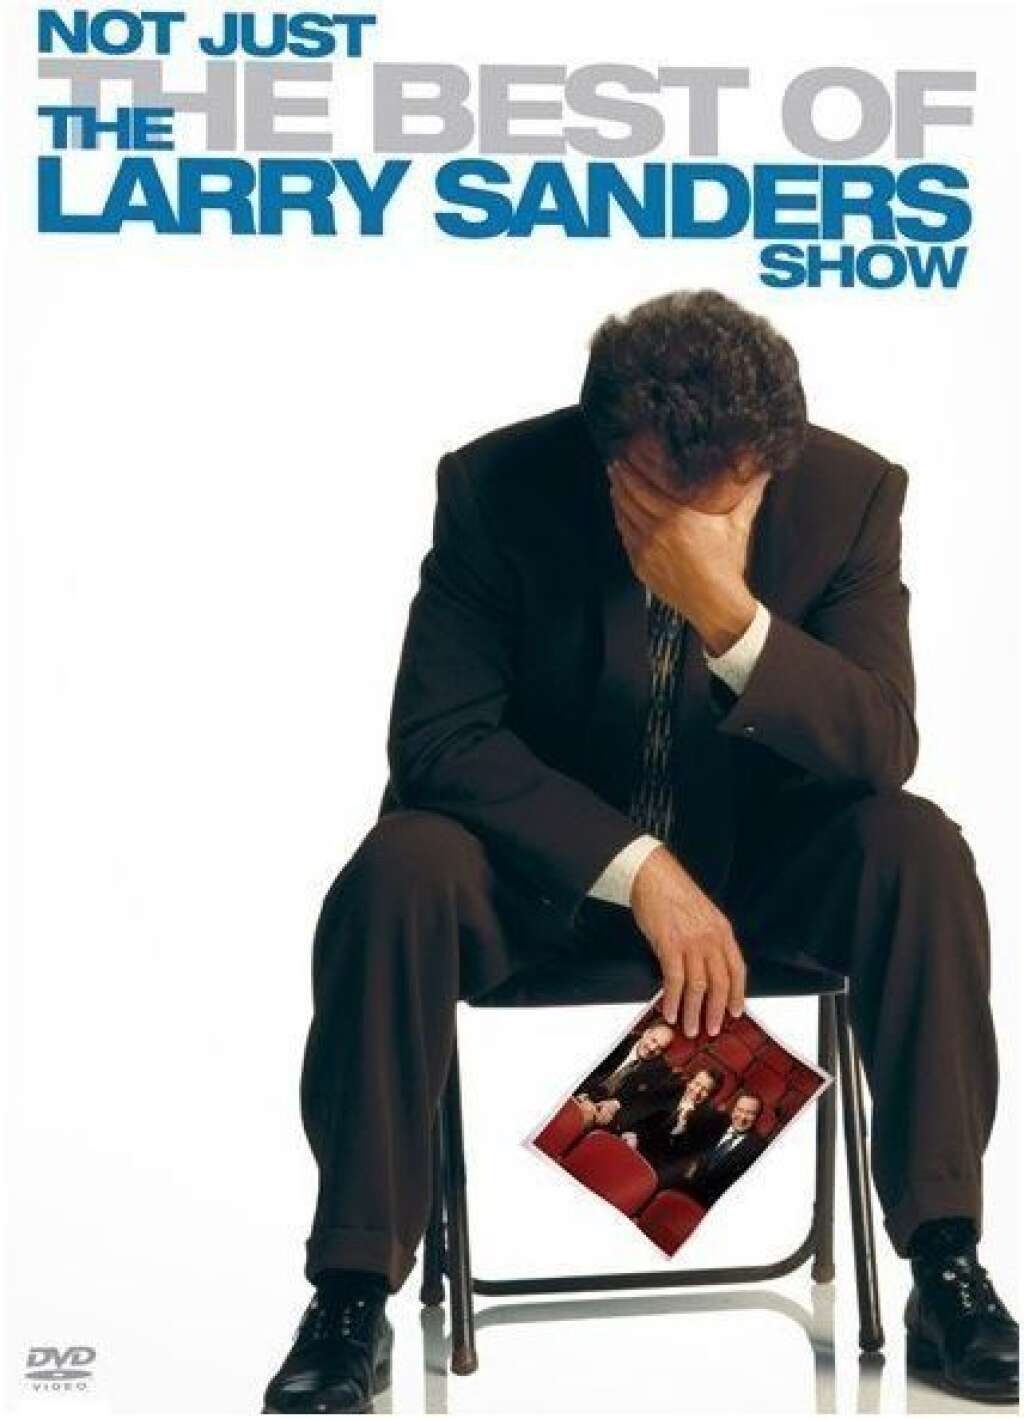 The Larry Sanders Show - N°20 :The Larry Sanders Show, 1992